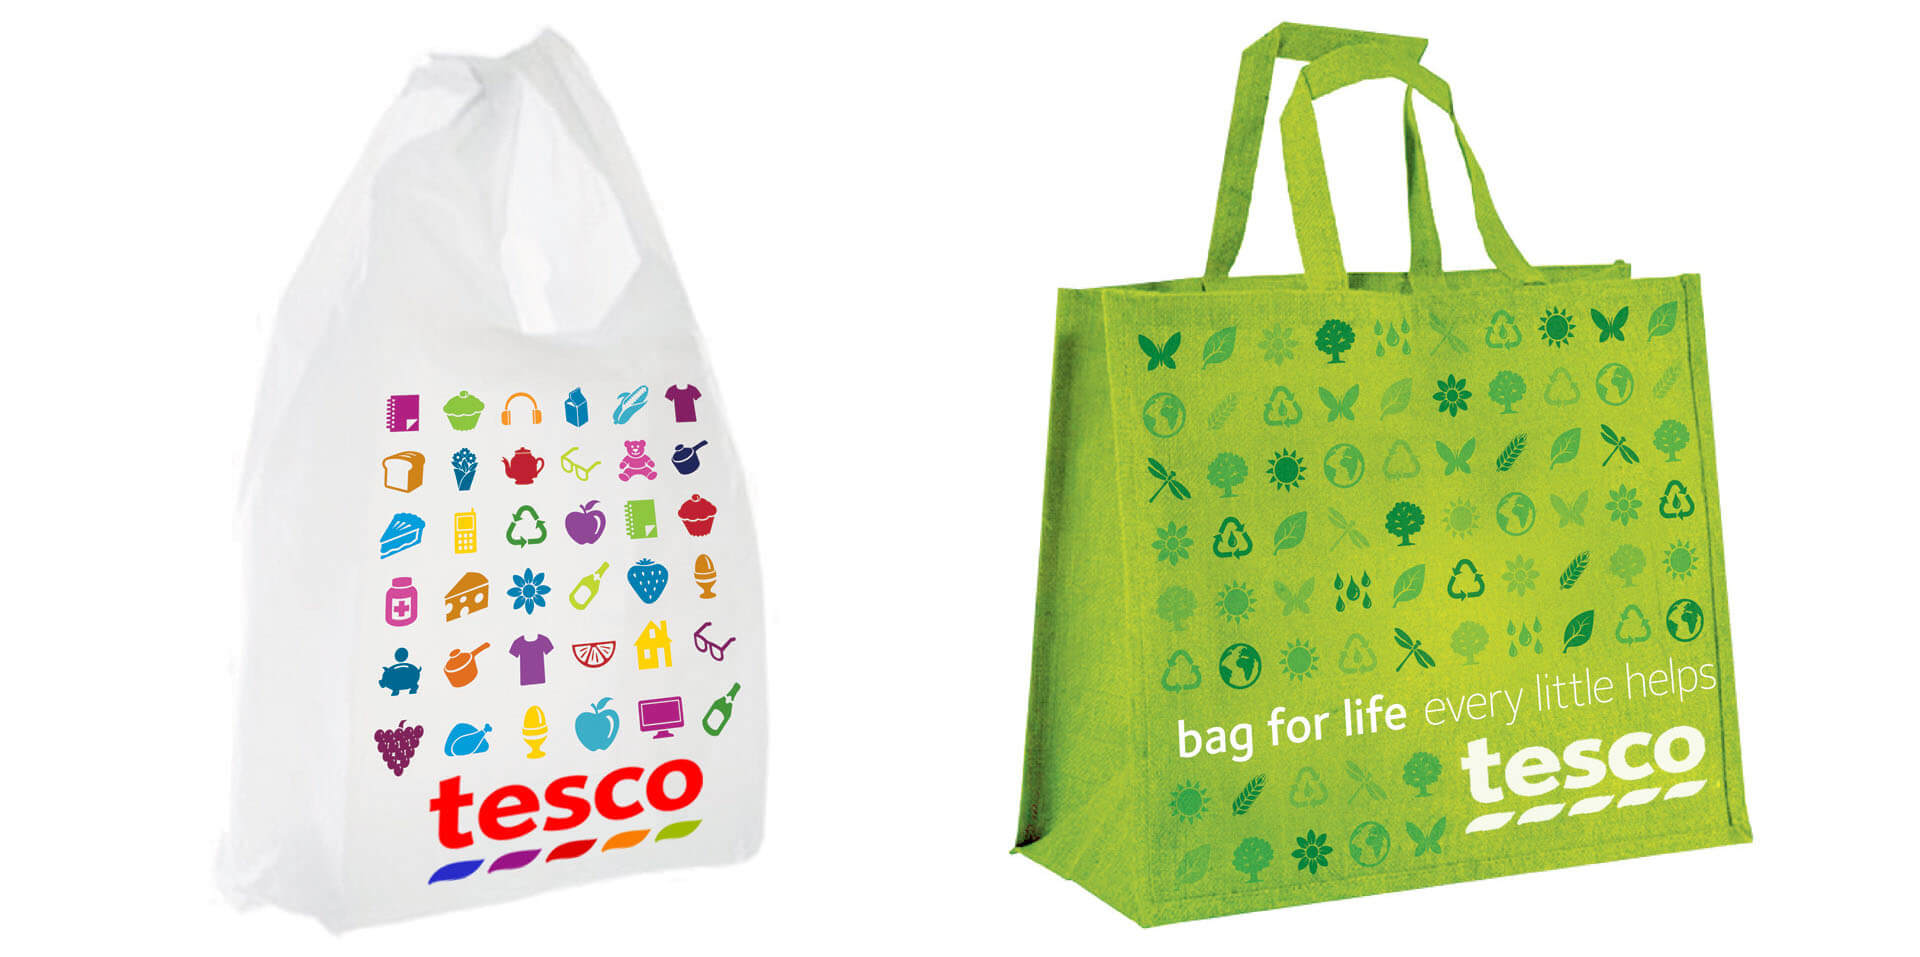 Rebranding Tesco brand identity on shopping bags